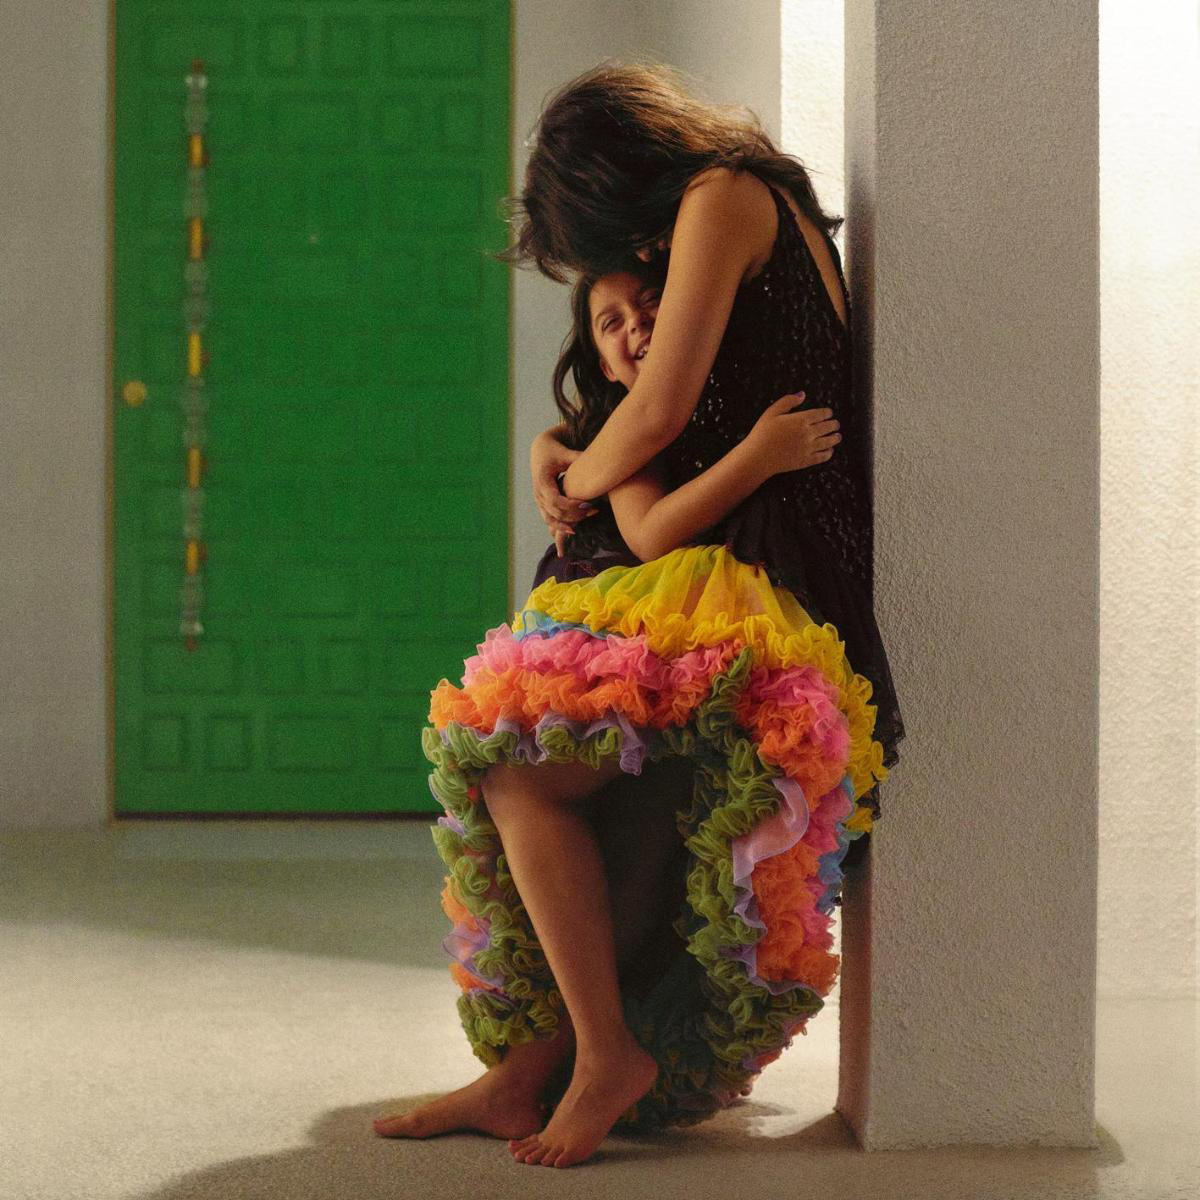 Das Albumcover "Familia" von Camila Cabello zeigt Cabello, wie sie ihre Cousine umarmt. Cabello trägt einen bunten Rock.